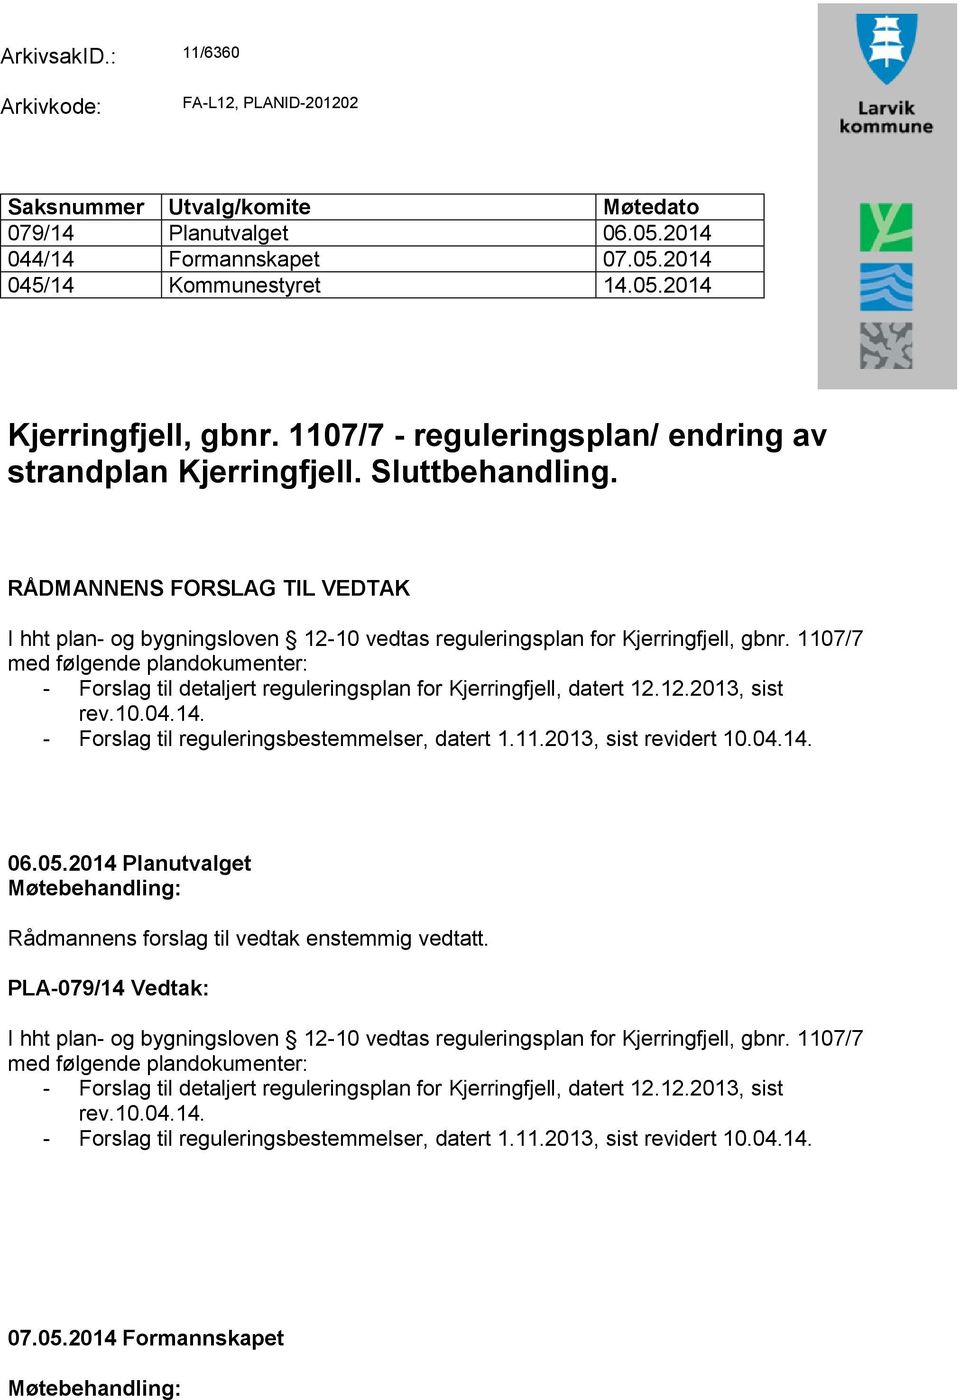 1107/7 med følgende plandokumenter: - Forslag til detaljert reguleringsplan for Kjerringfjell, datert 12.12.2013, sist rev.10.04.14. - Forslag til reguleringsbestemmelser, datert 1.11.2013, sist revidert 10.